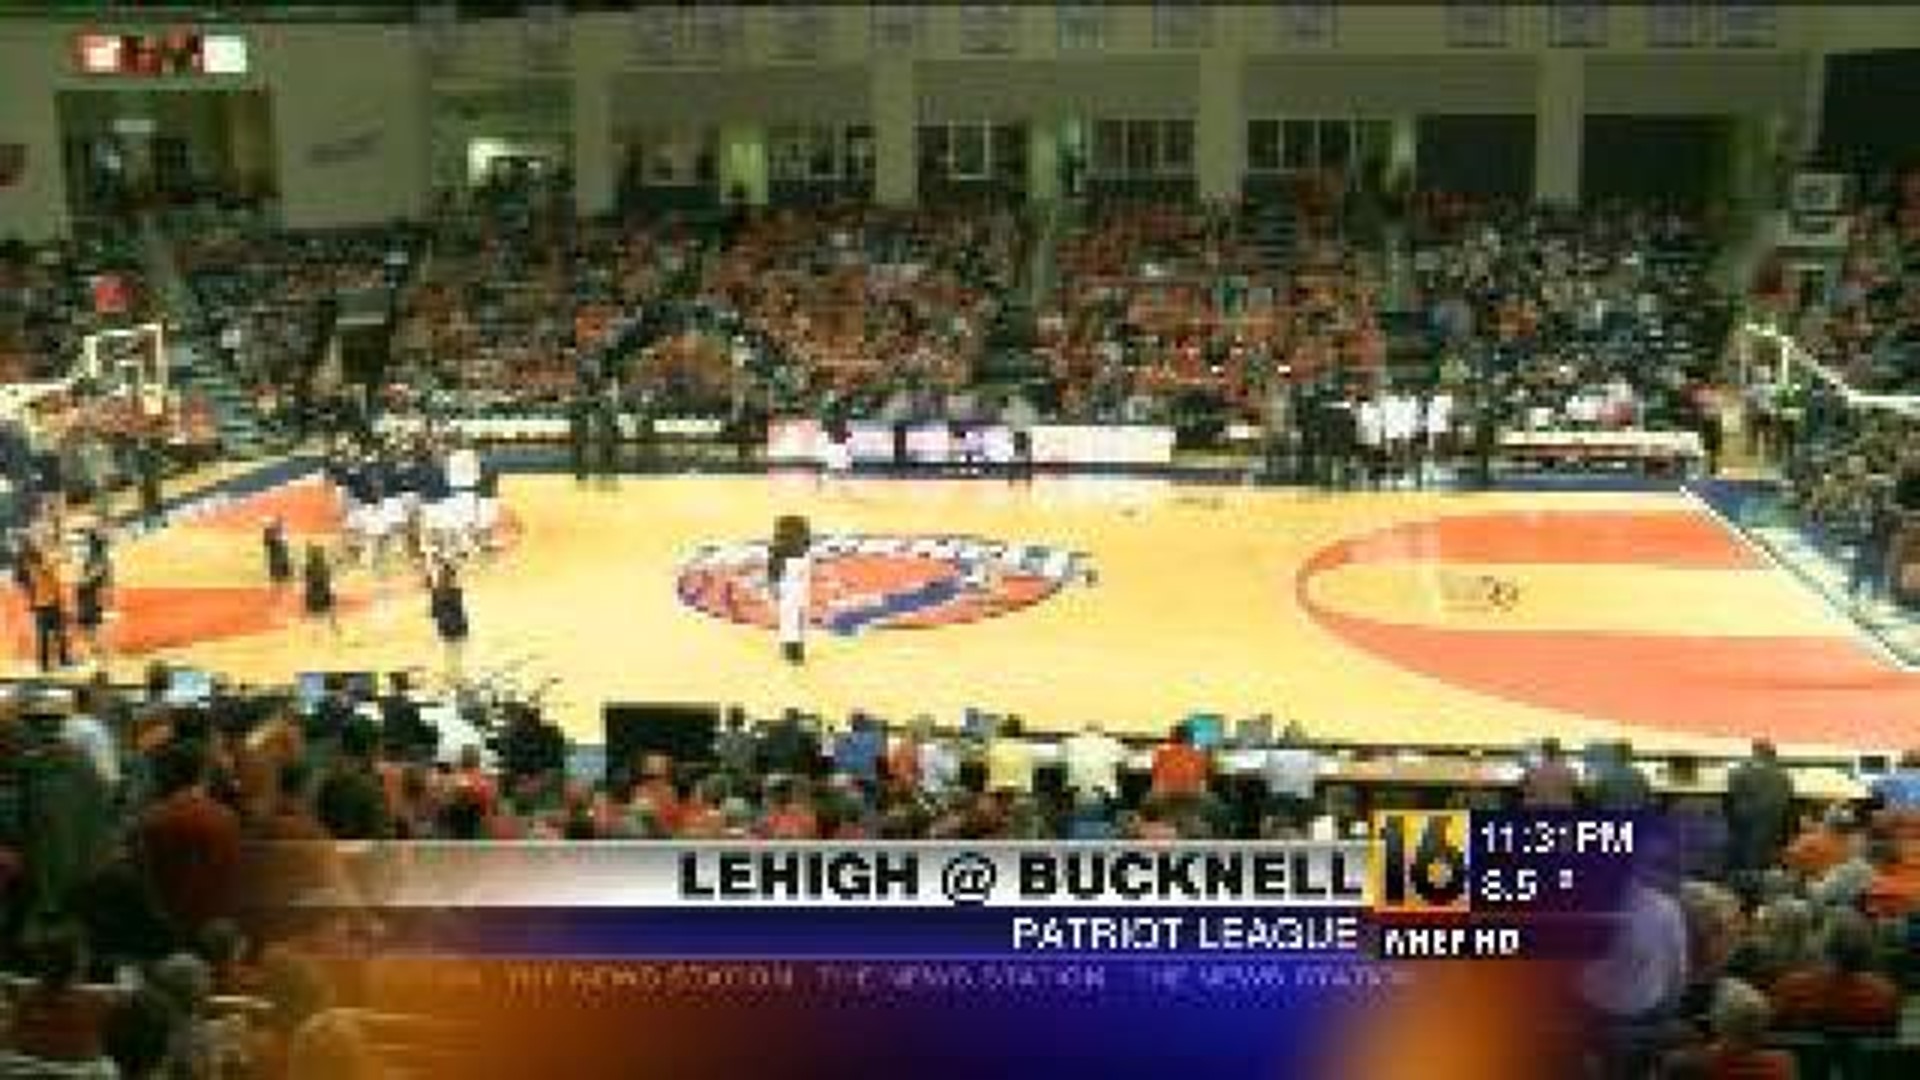 Lehigh vs Bucknell